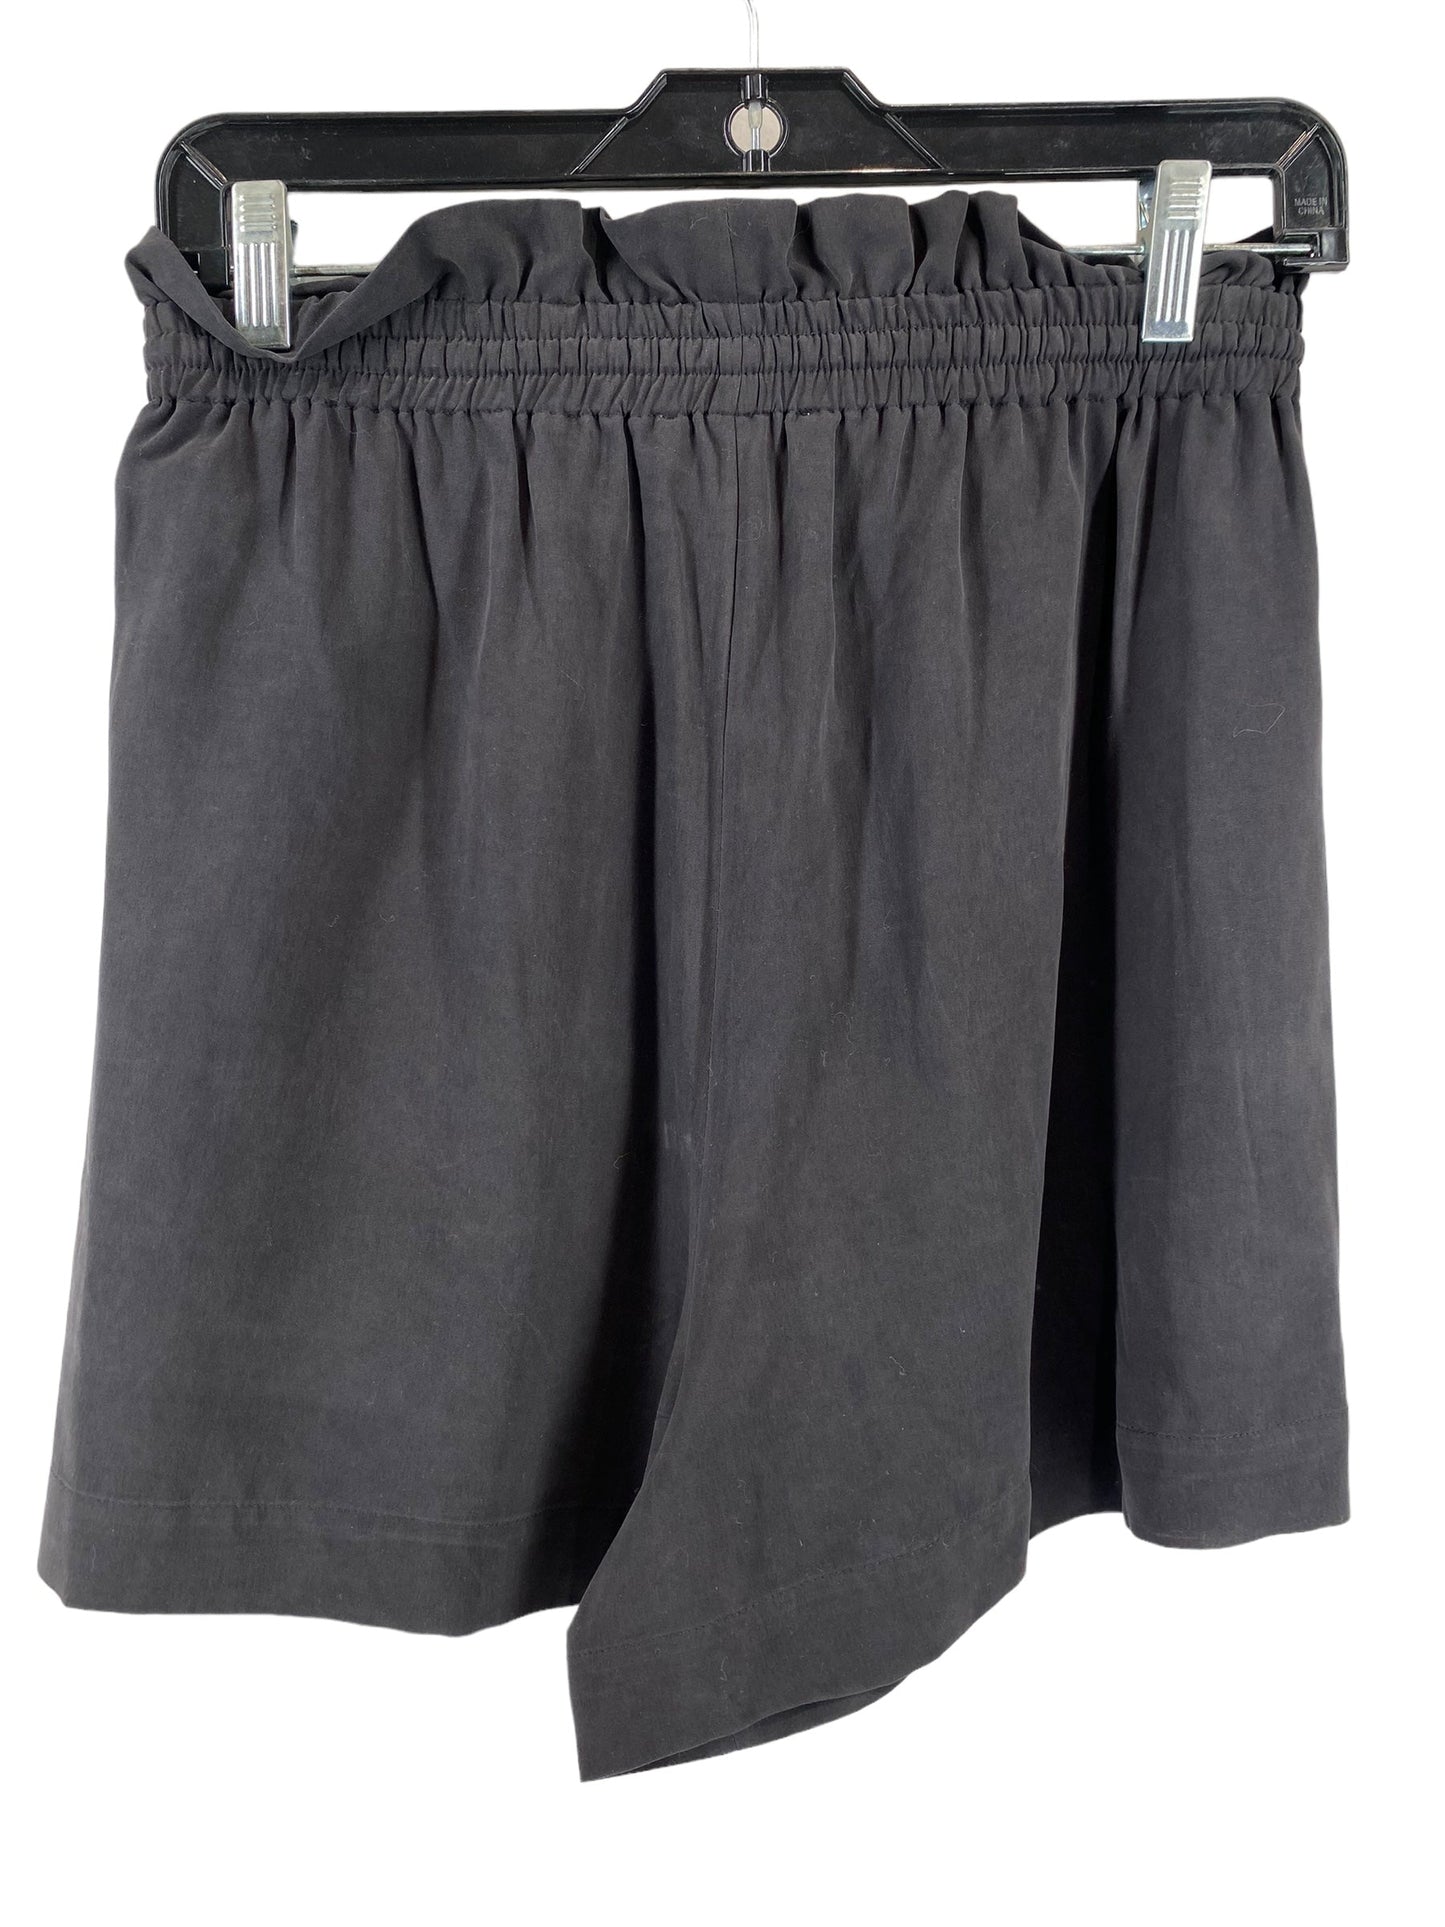 Shorts By Antonio Melani  Size: 6